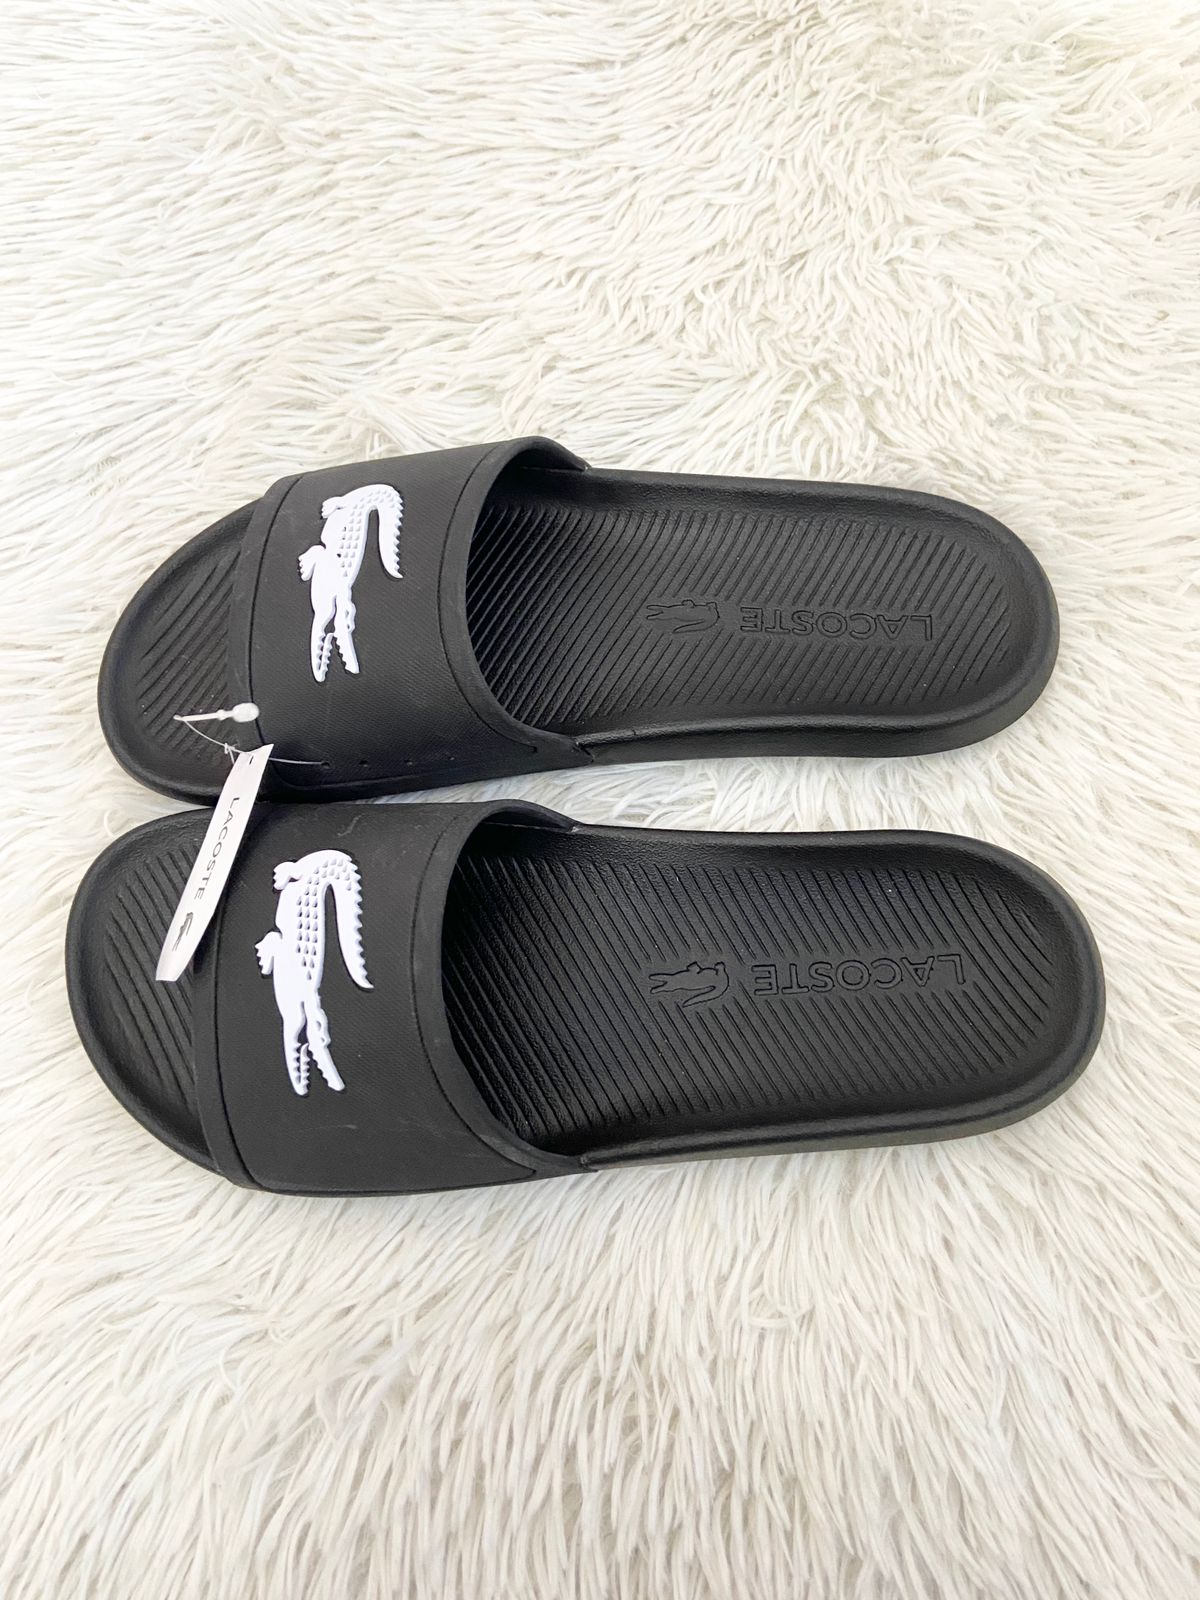 Sandalias Lacoste original, negro liso, con logotipo de la marca en frente en blanco.